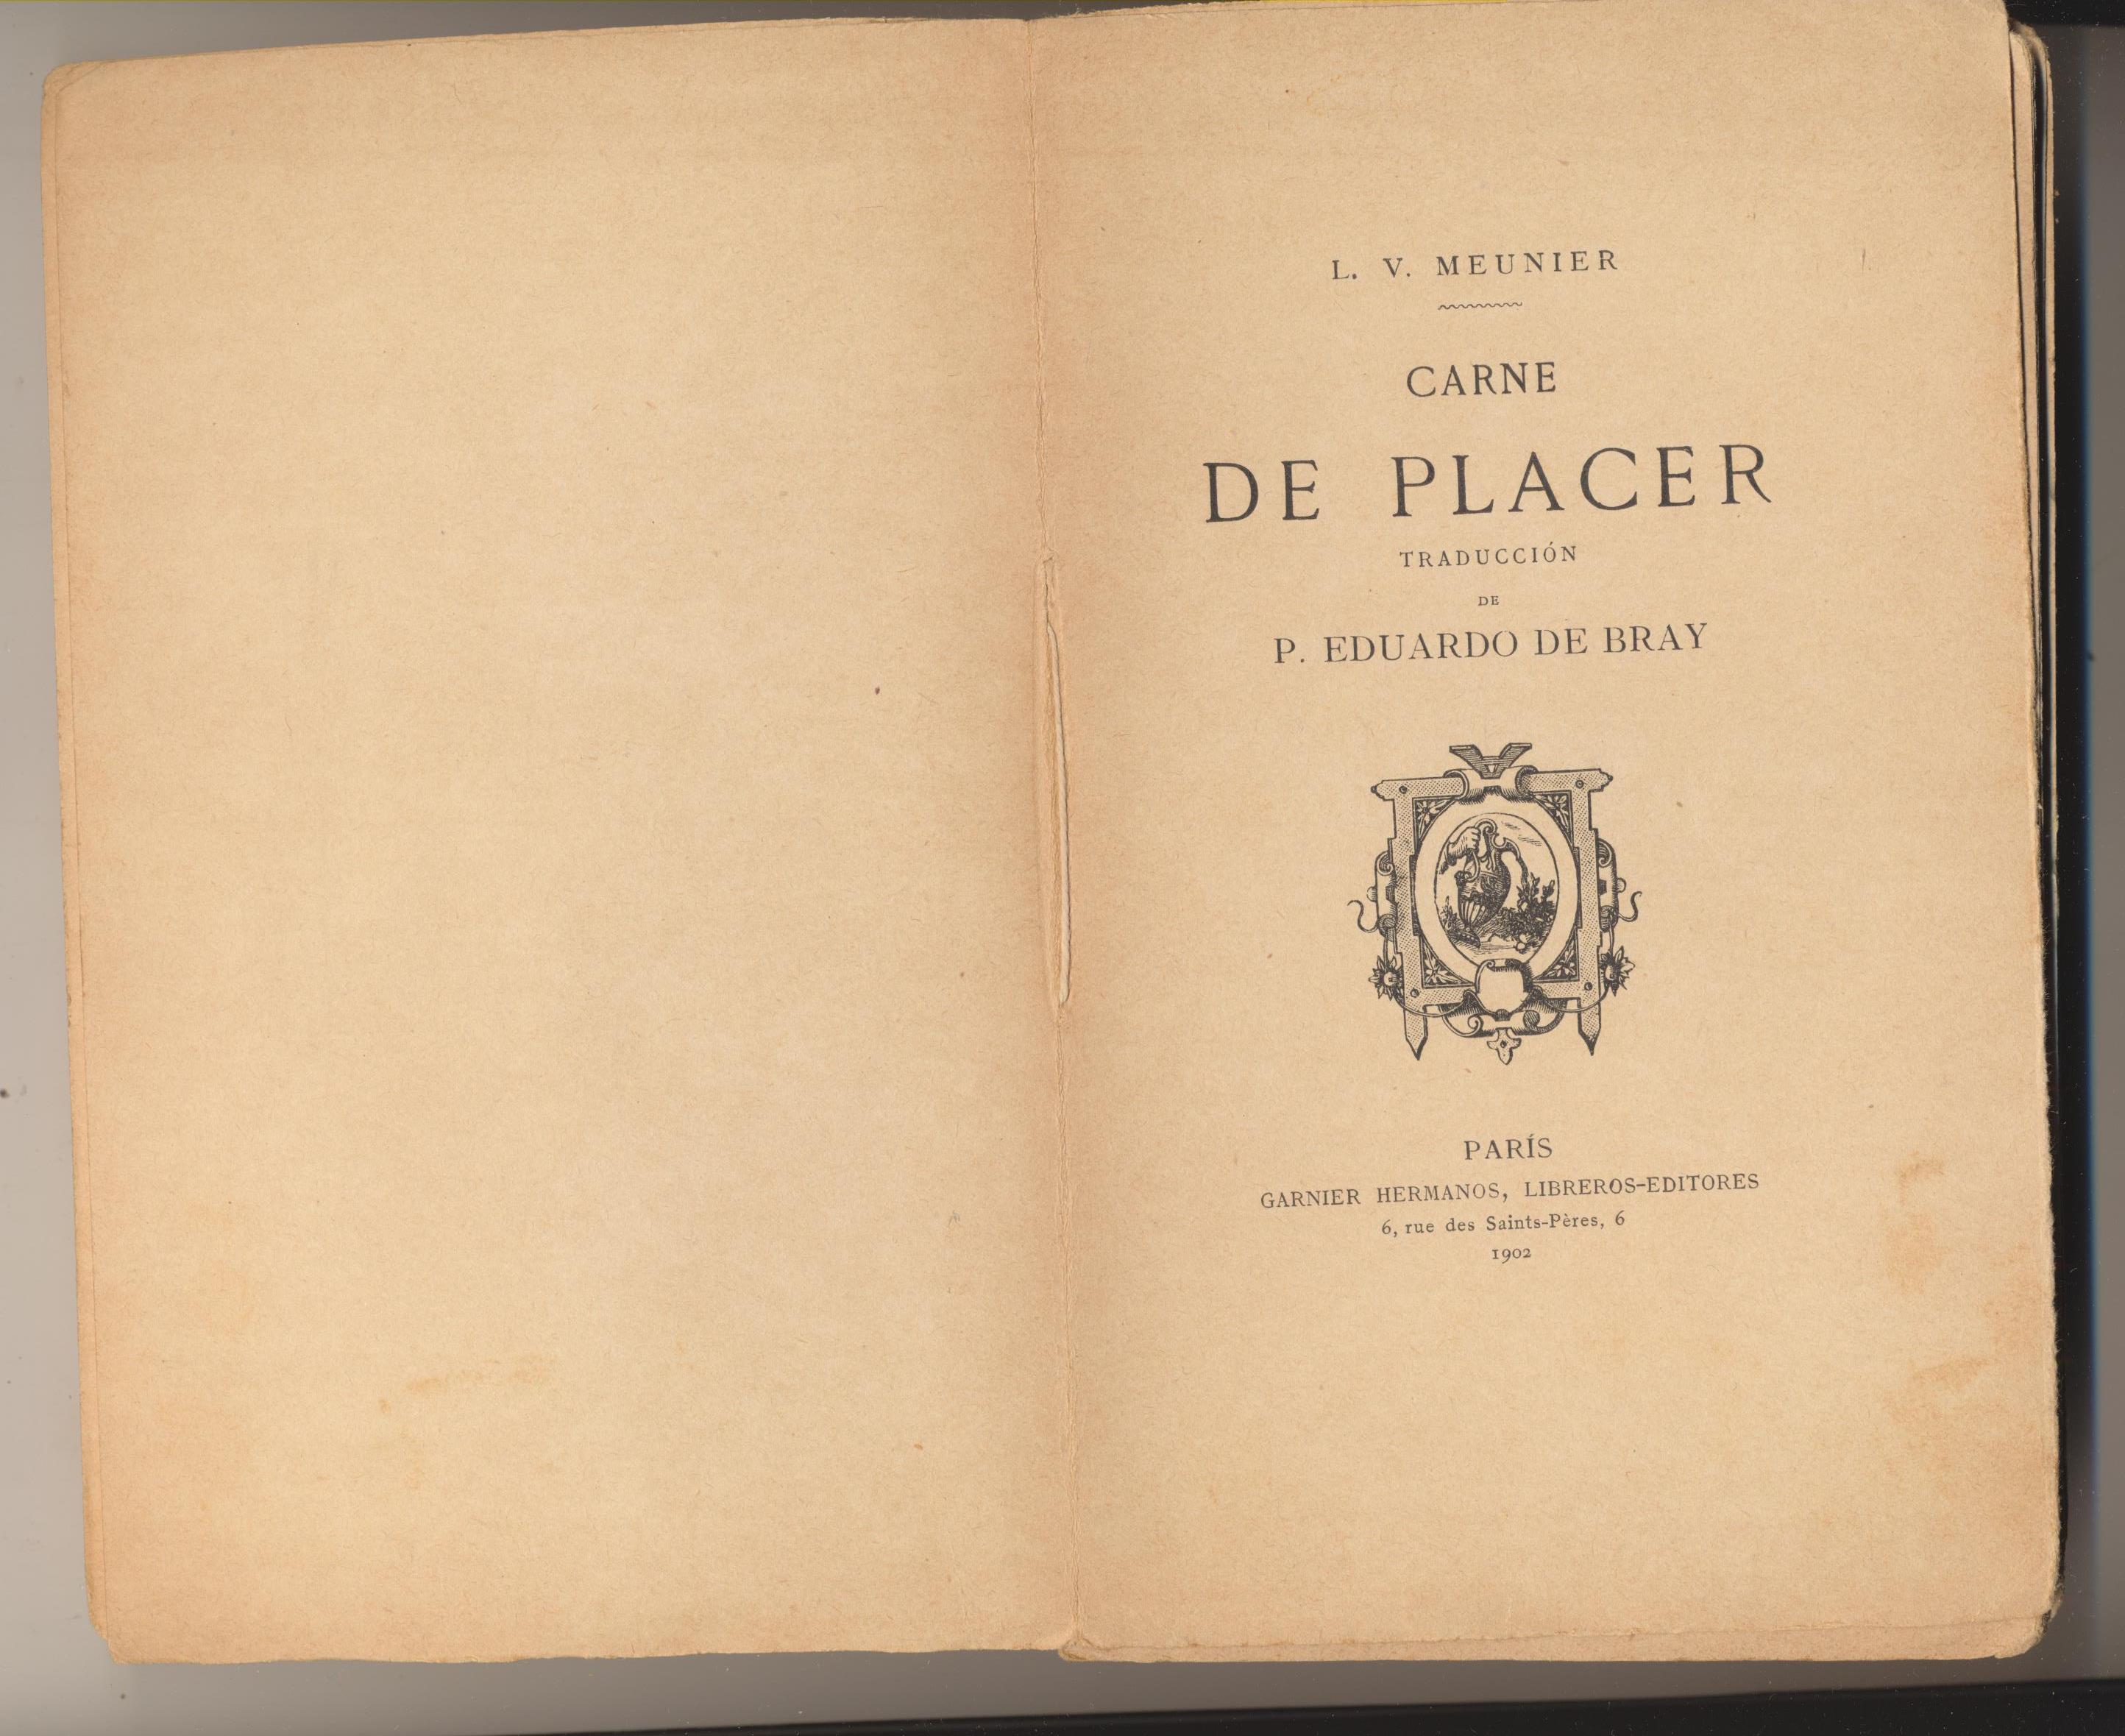 L. V. Meunier. Carne de placer. Garnier Hermanos Libreros-Editores. Paris 1902